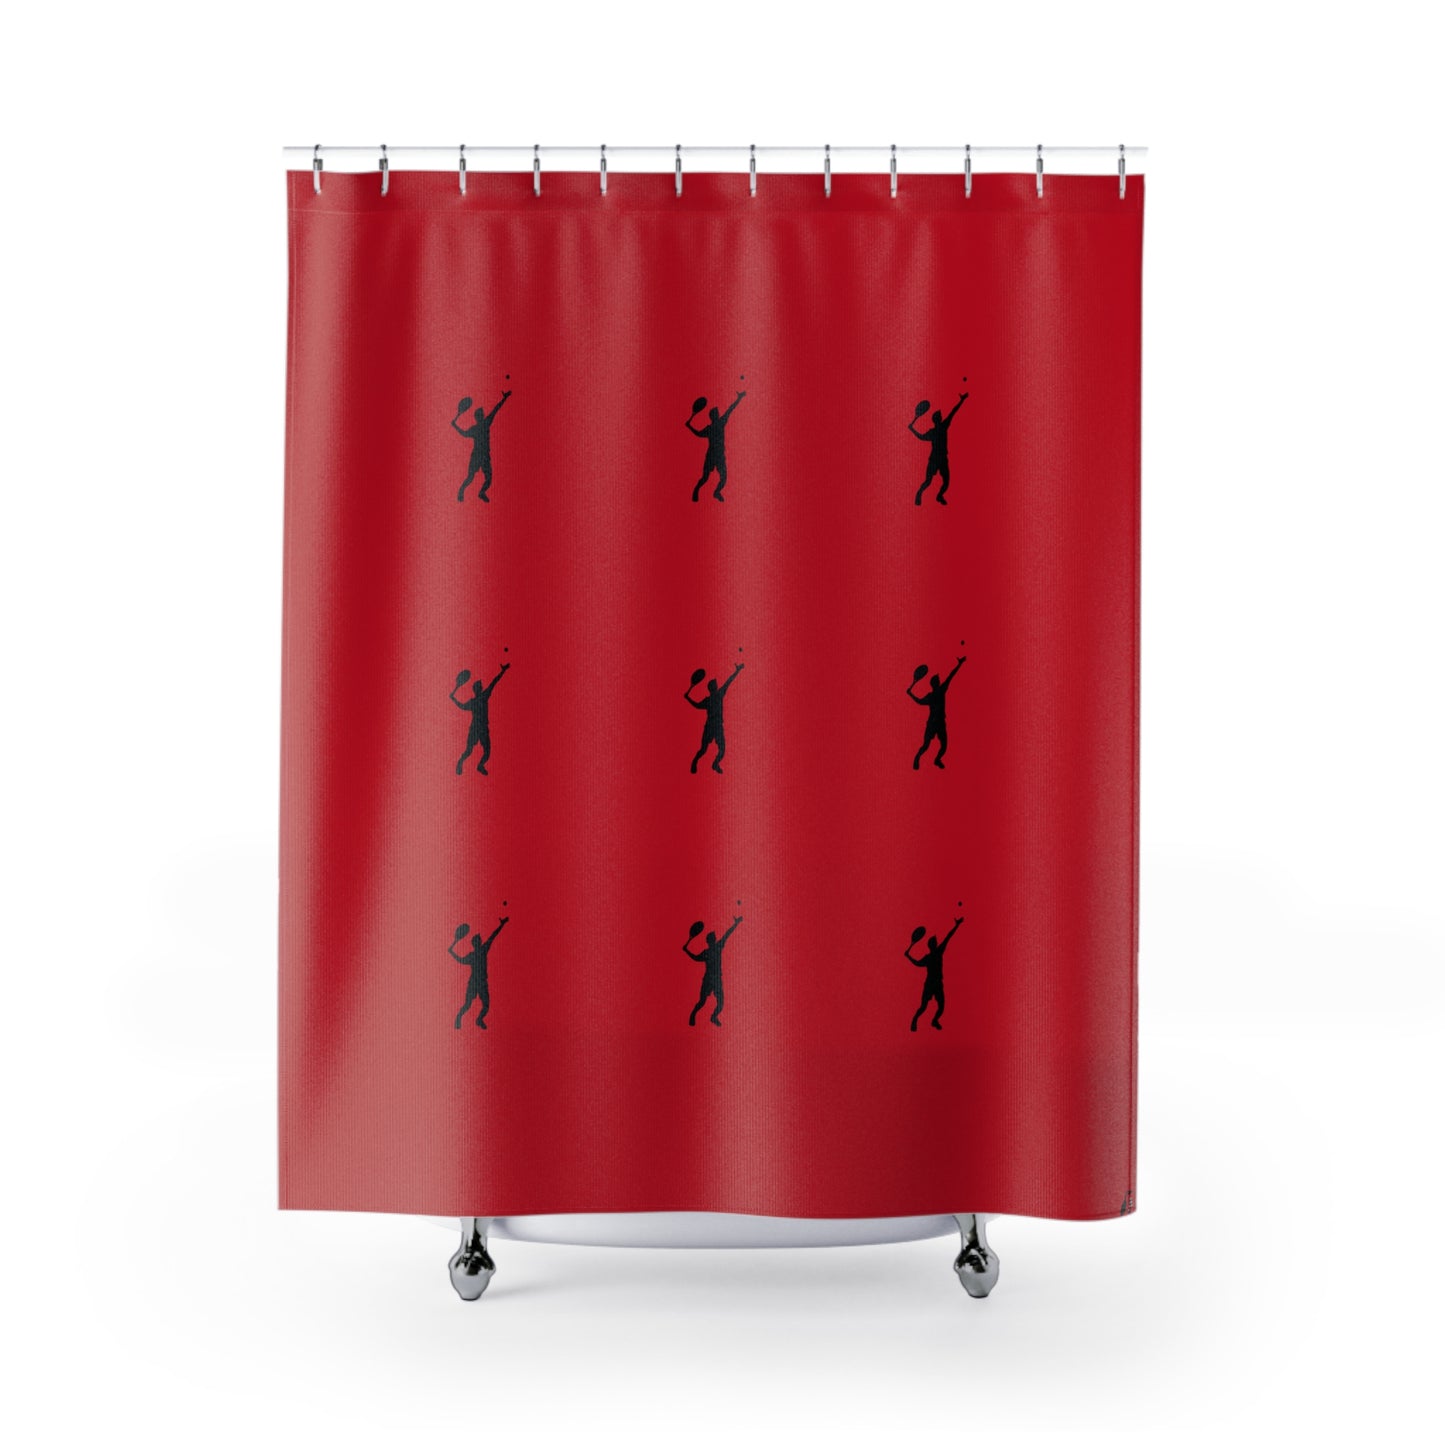 Shower Curtains: #2 Tennis Dark Red